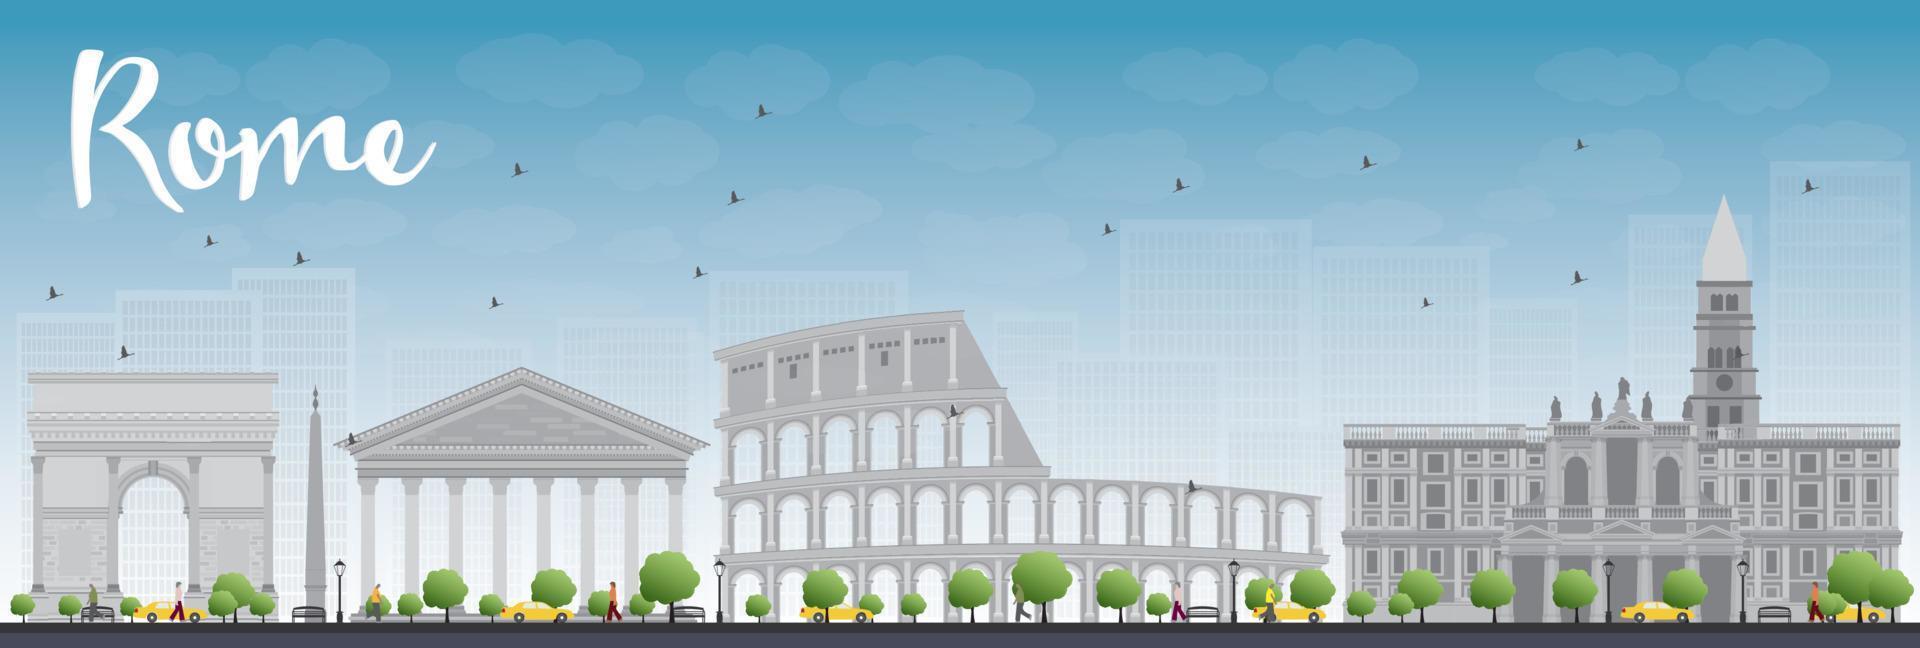 Rome skyline with grey landmarks and blue sky vector